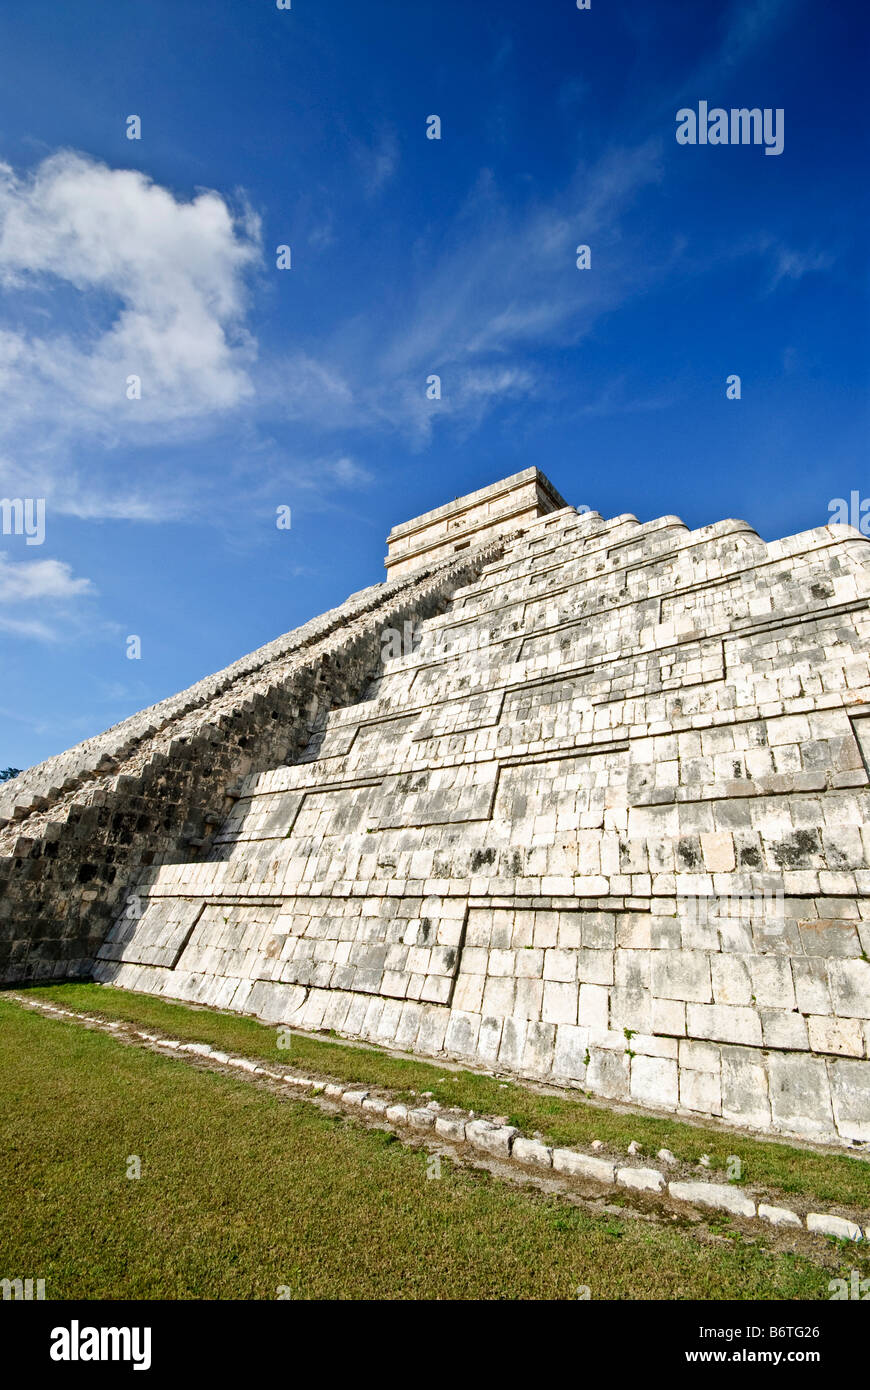 CHICHEN ITZA, Mexique - El Castillo (également connu sous le nom de Temple d'Kuklcan) à l'ancienne ruines mayas de Chichen Itza, Yucatan, Mexique 081216092726 1919x.tif Banque D'Images